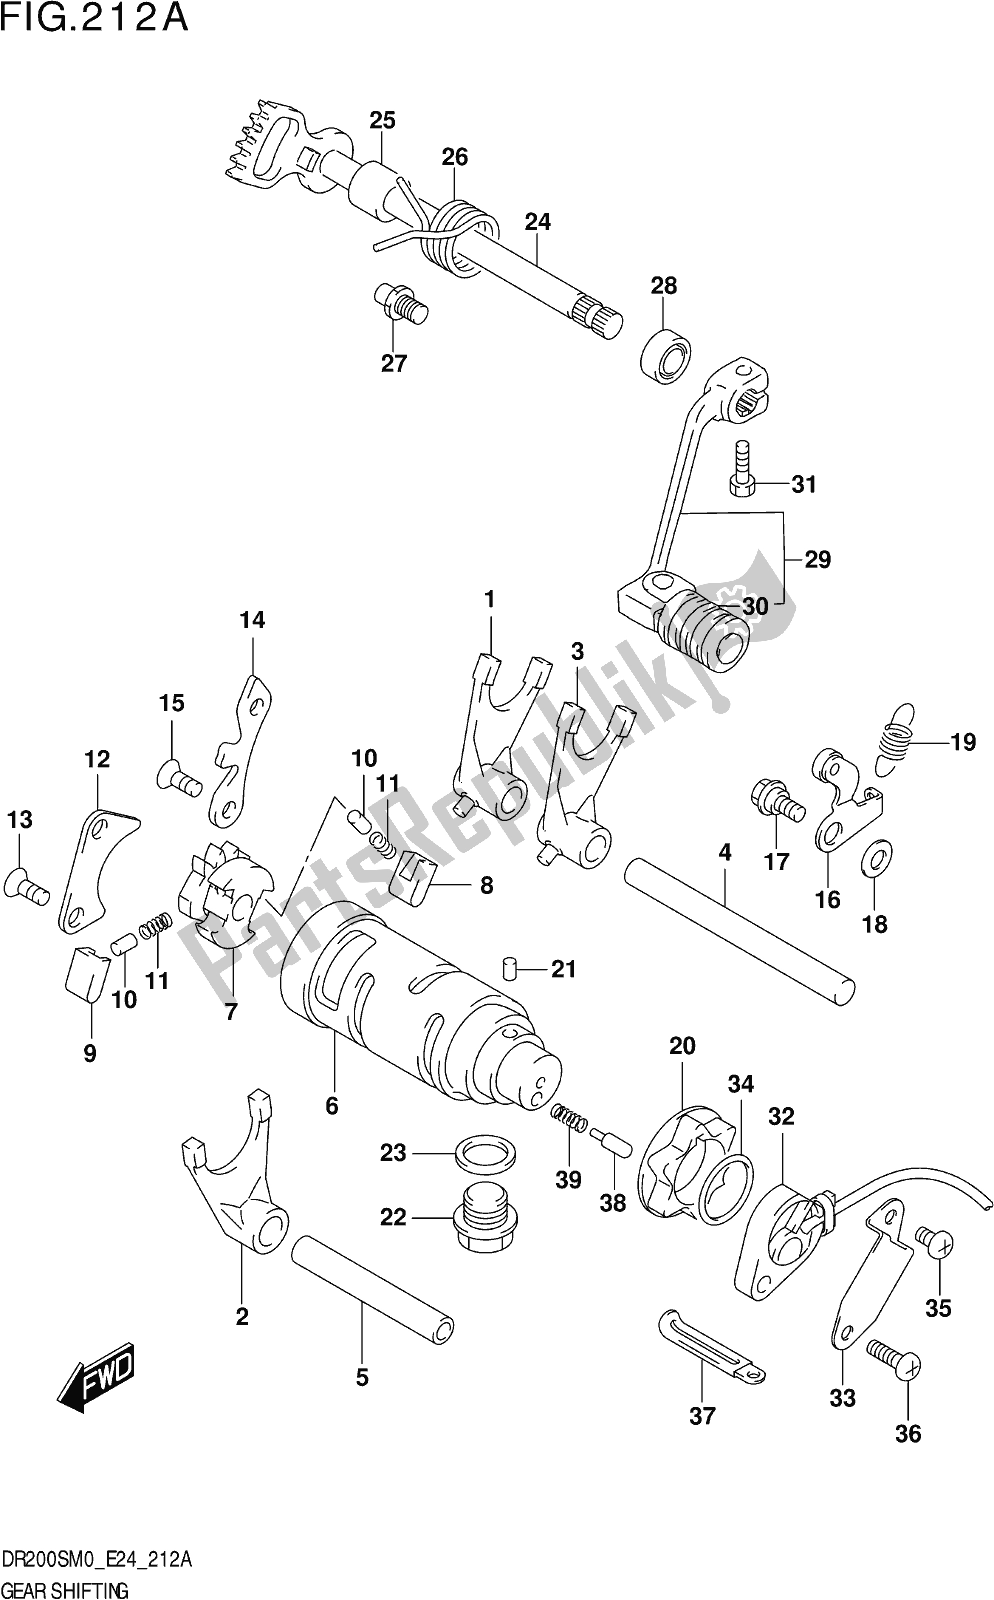 Todas as partes de Fig. 212a Gear Shifting do Suzuki DR 200S 2020